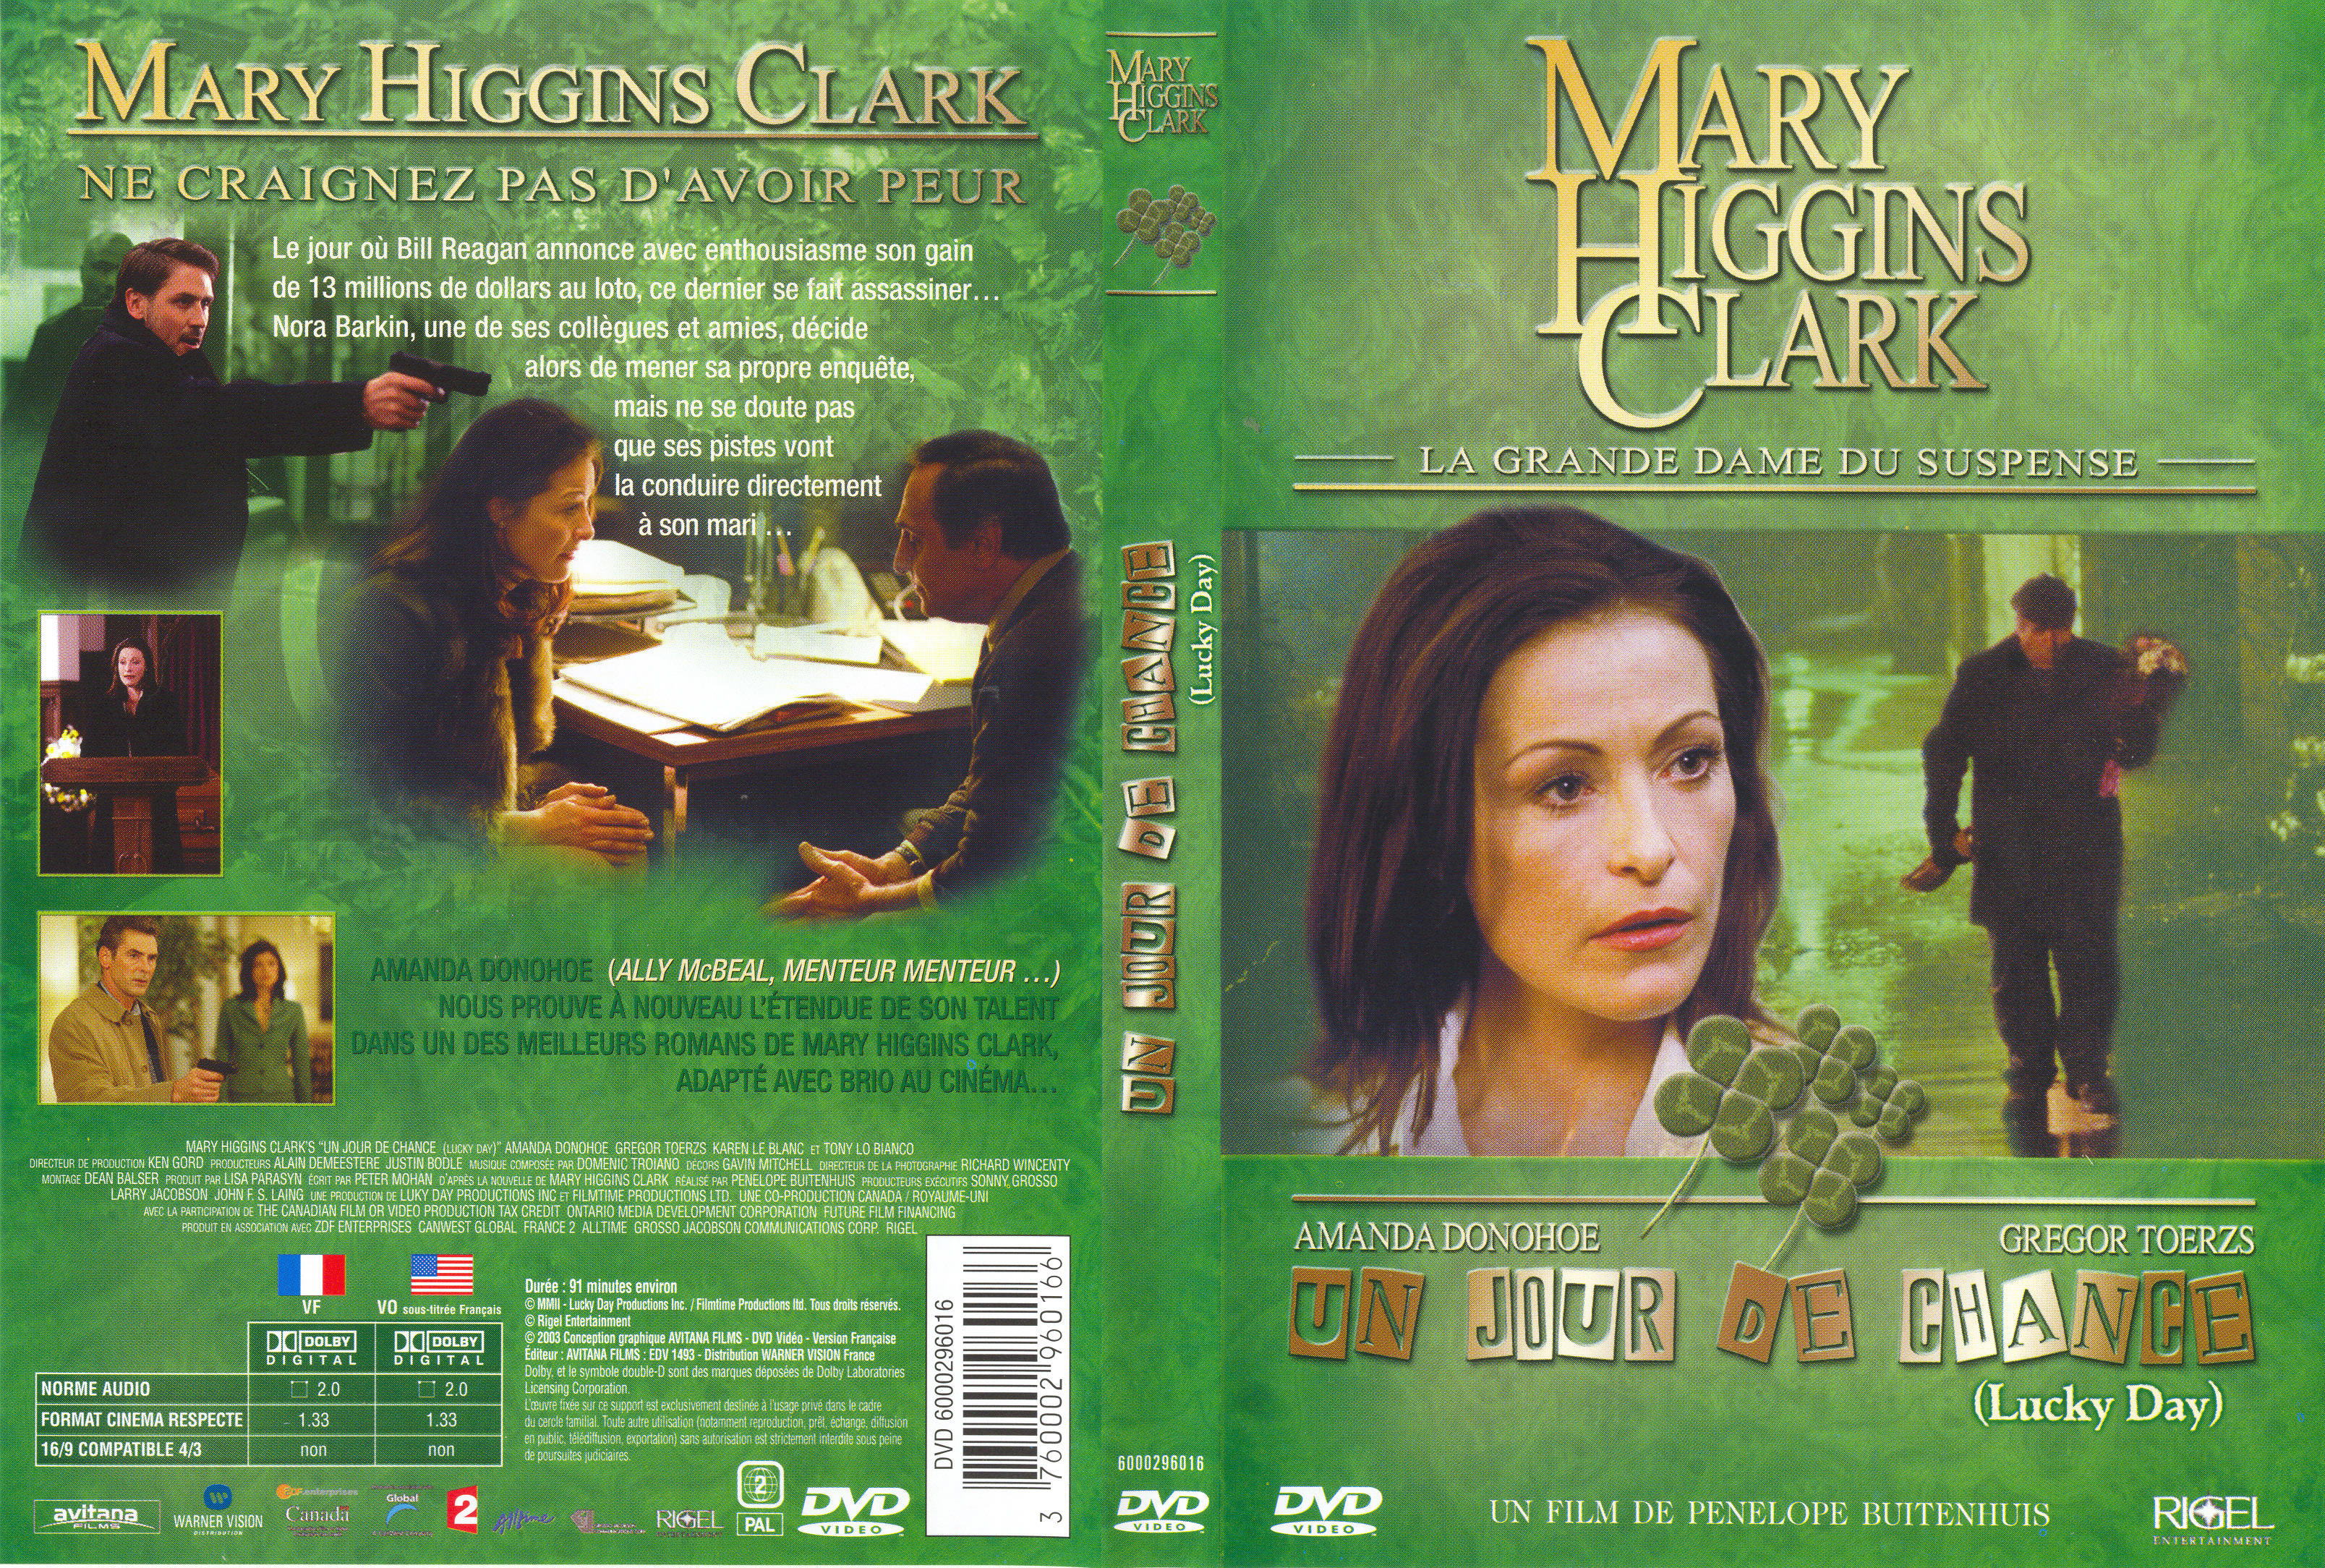 Jaquette DVD de Mary Higgins Clark - Un jour de chance - Cinéma Passion3215 x 2168